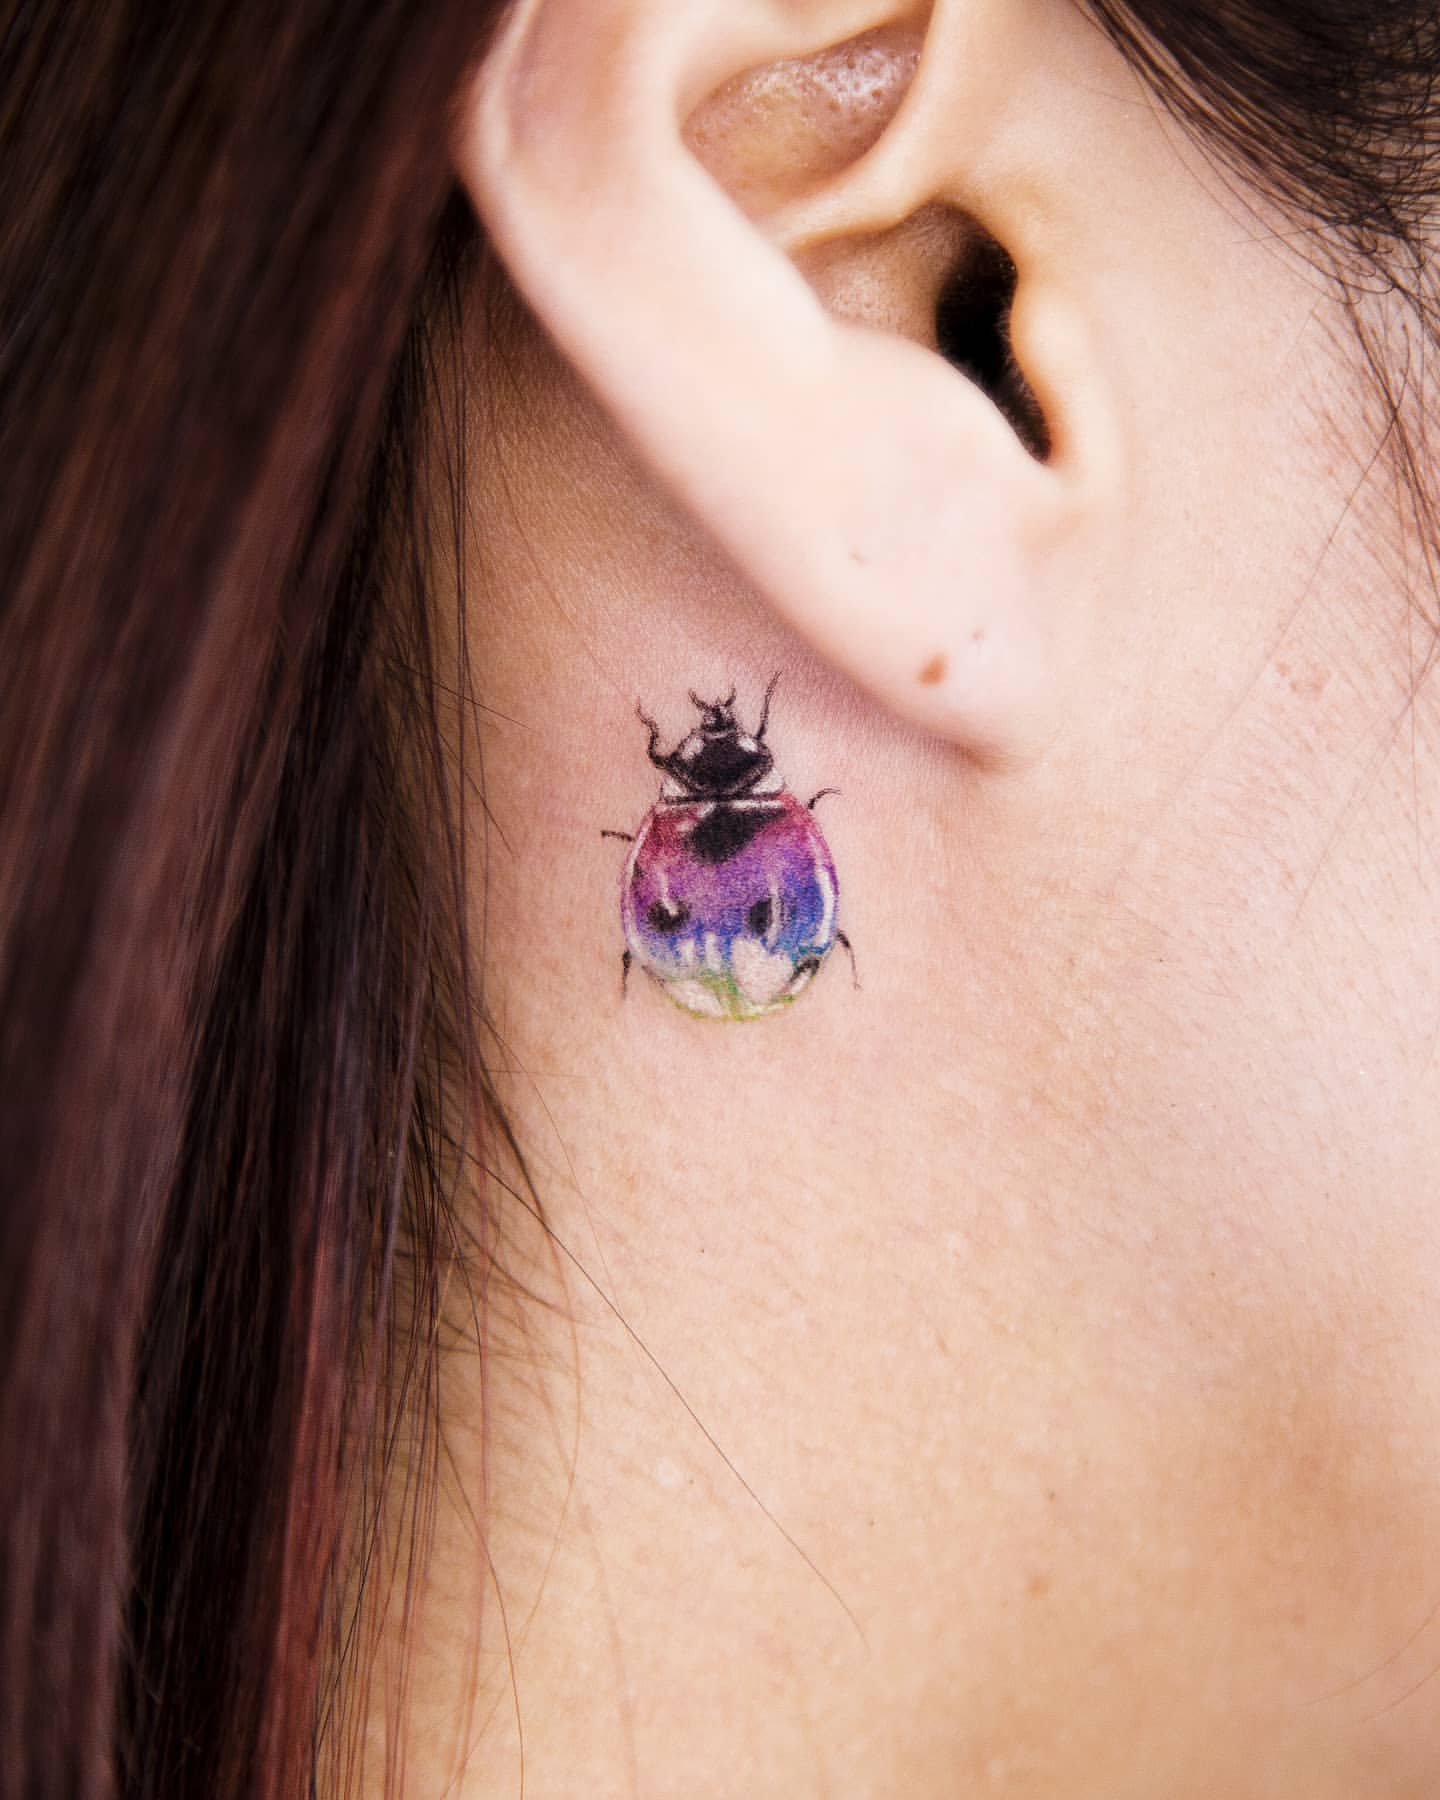 Ladybug Tattoo Ideas 1